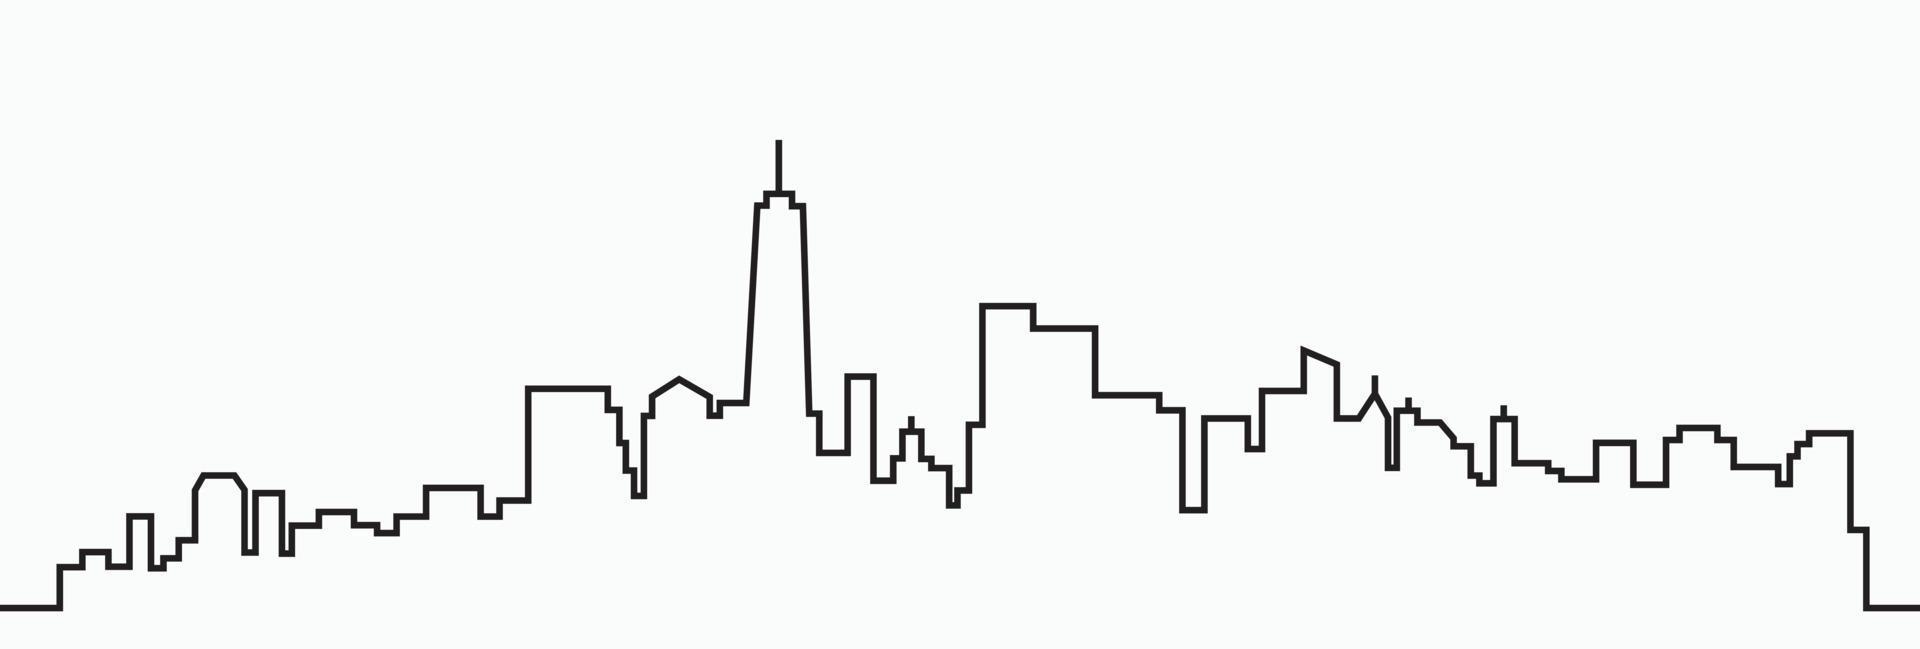 desenho de contorno do horizonte da cidade moderna em fundo branco. vetor